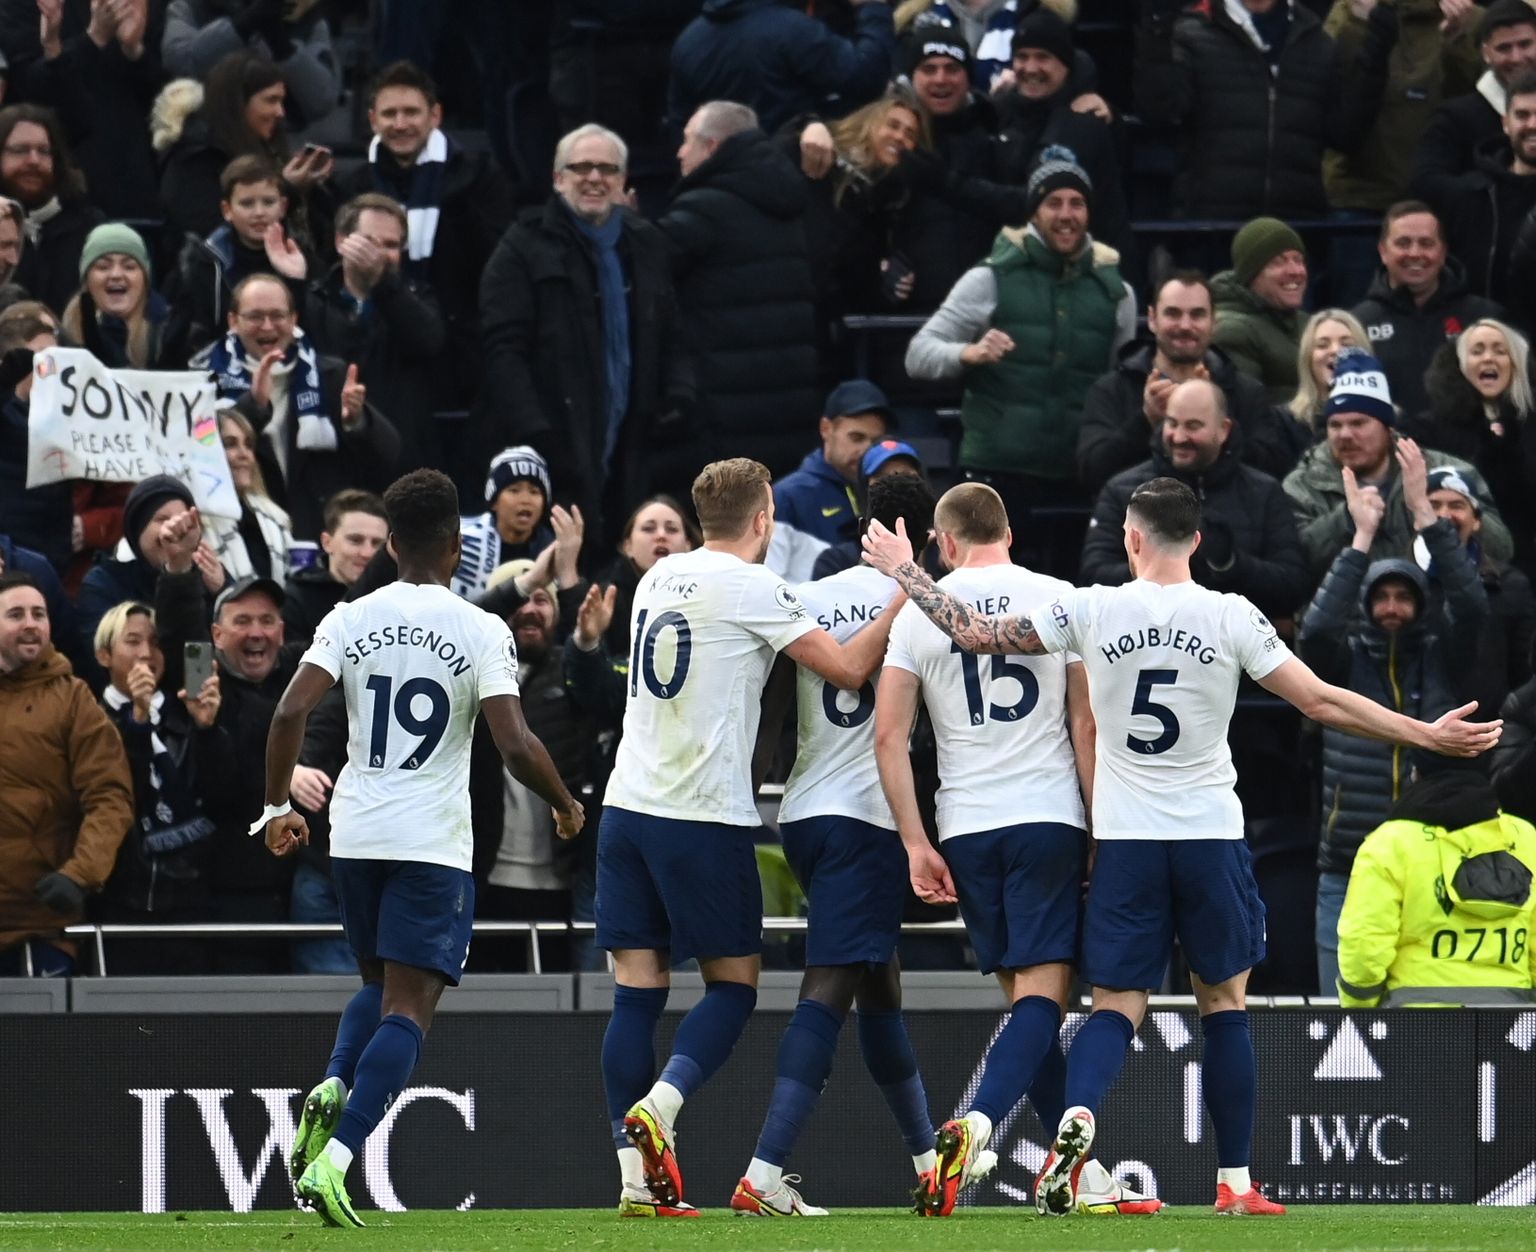 Tottenhami mängijad väravat tähistamas. Pilt on illustratiivne.